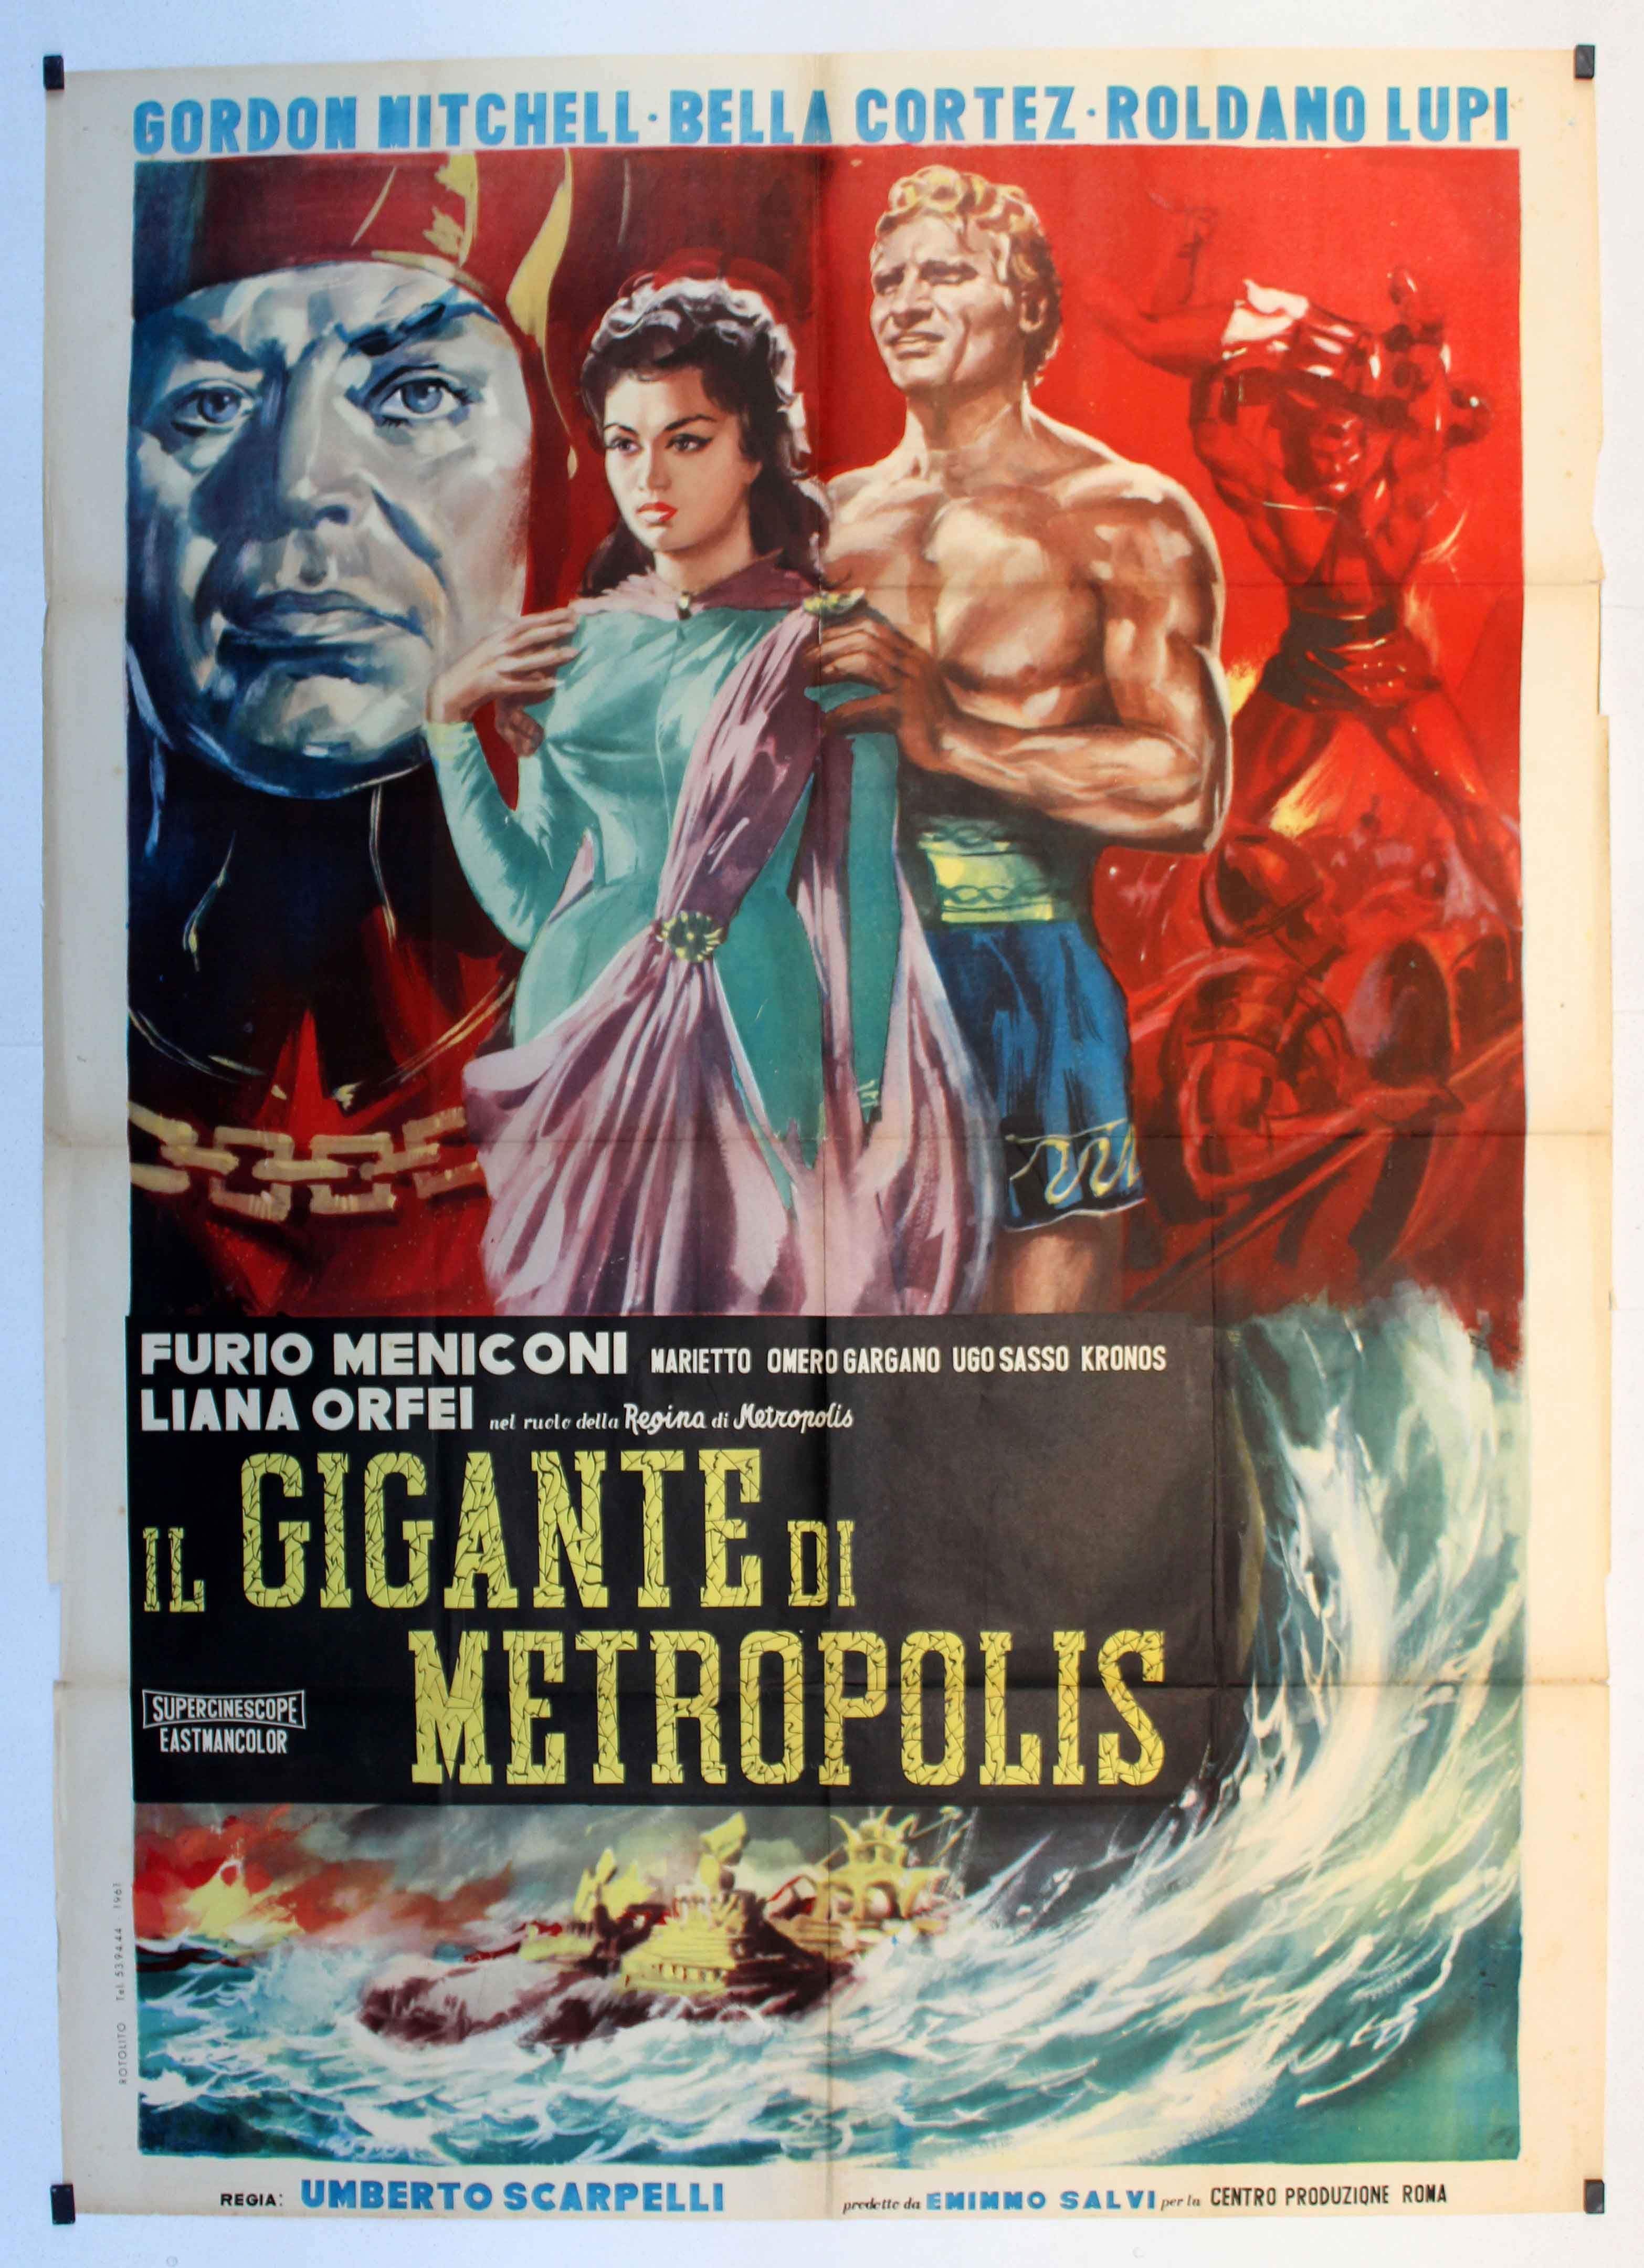 Italian poster of the movie Il gigante di Metropolis